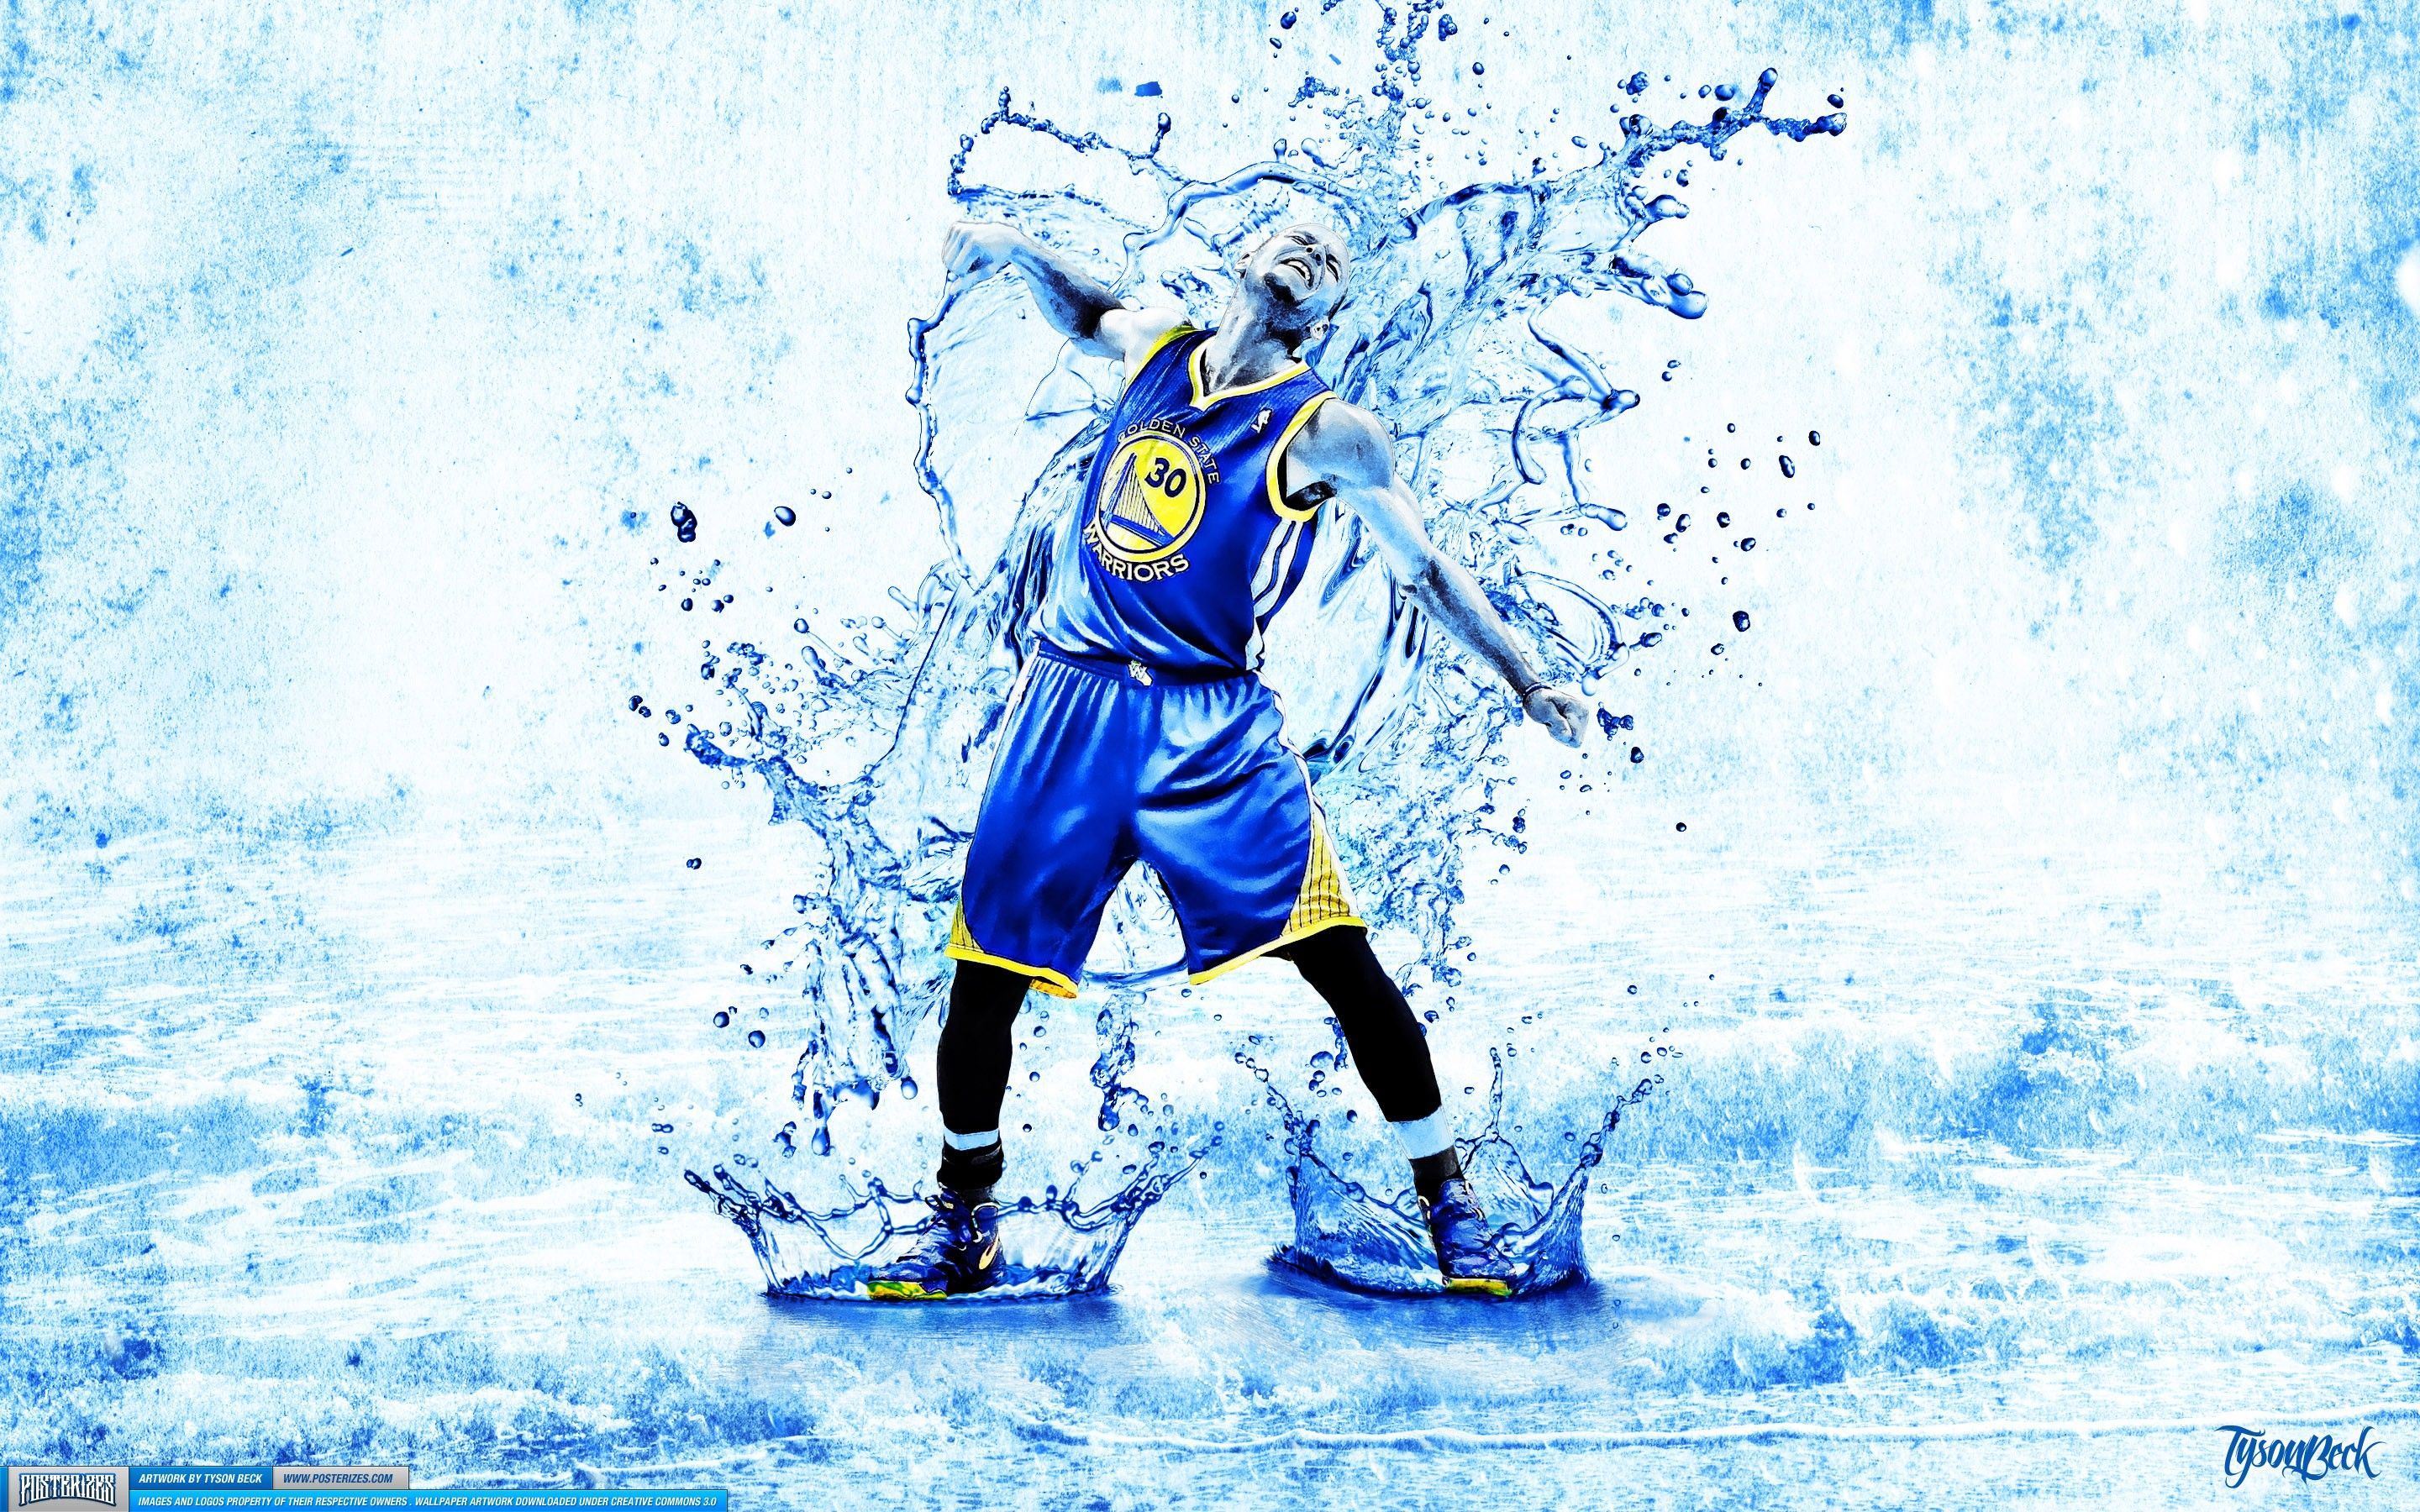 Stephen Curry 2015 Golden State Warriors NBA Wallpaper free